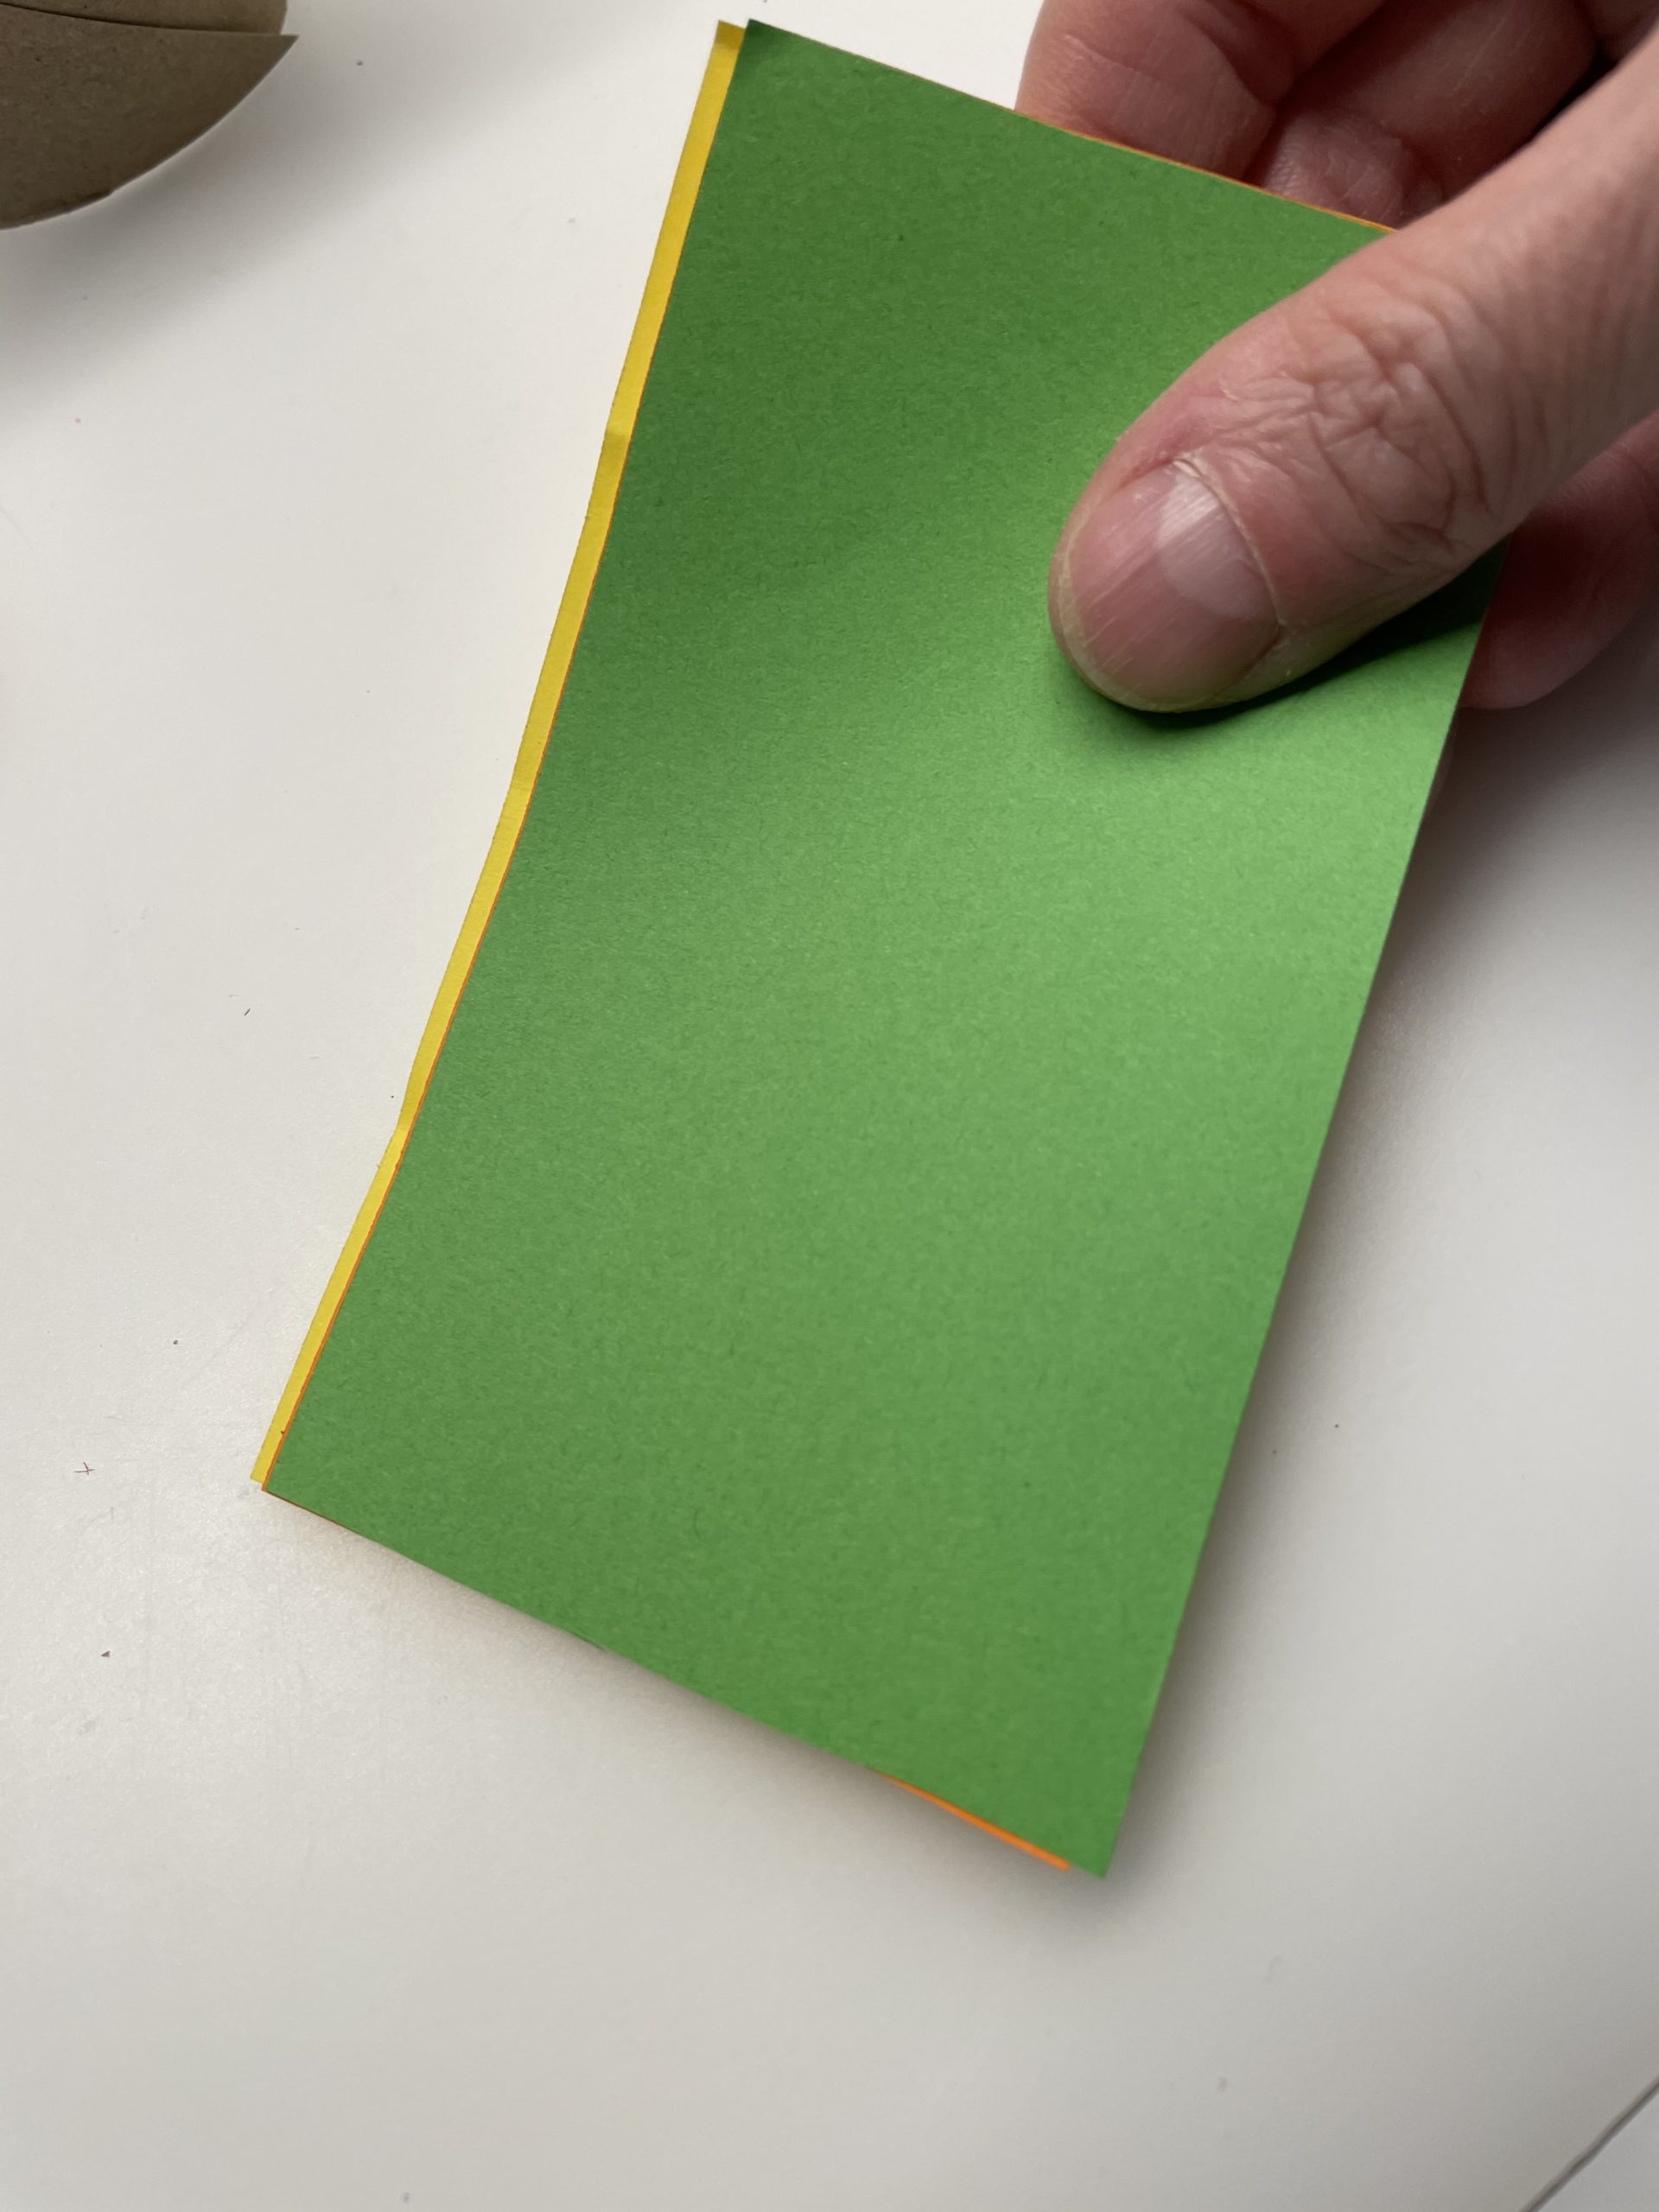 Bild zum Schritt 3 für das Bastel- und DIY-Abenteuer für Kinder: 'Anschließend legt ihr das gelbe, orange und grüne Papier aufeinander....'